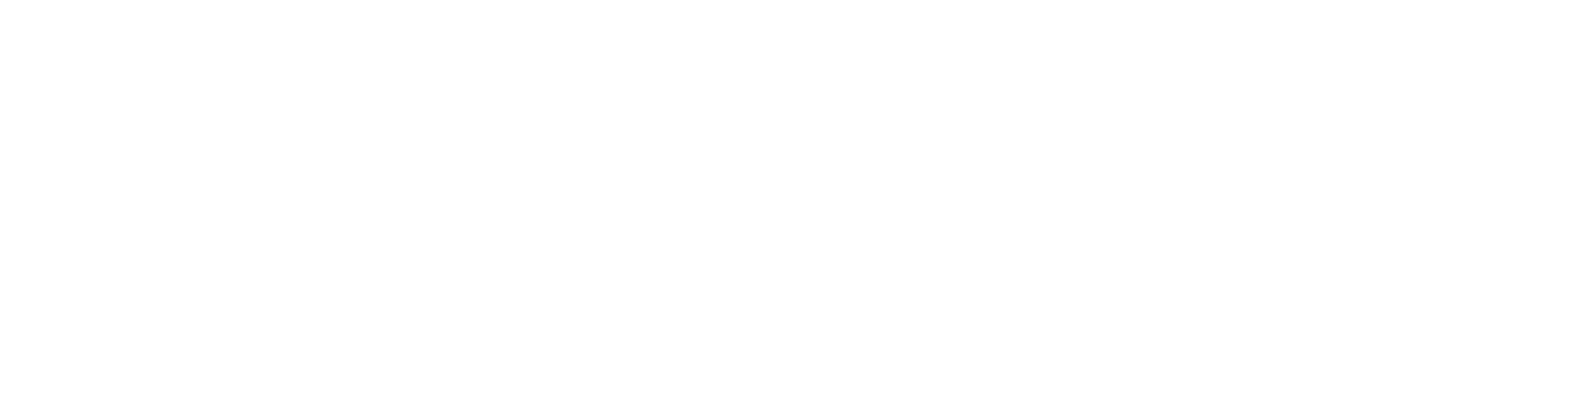 Victoria Yoga Conference